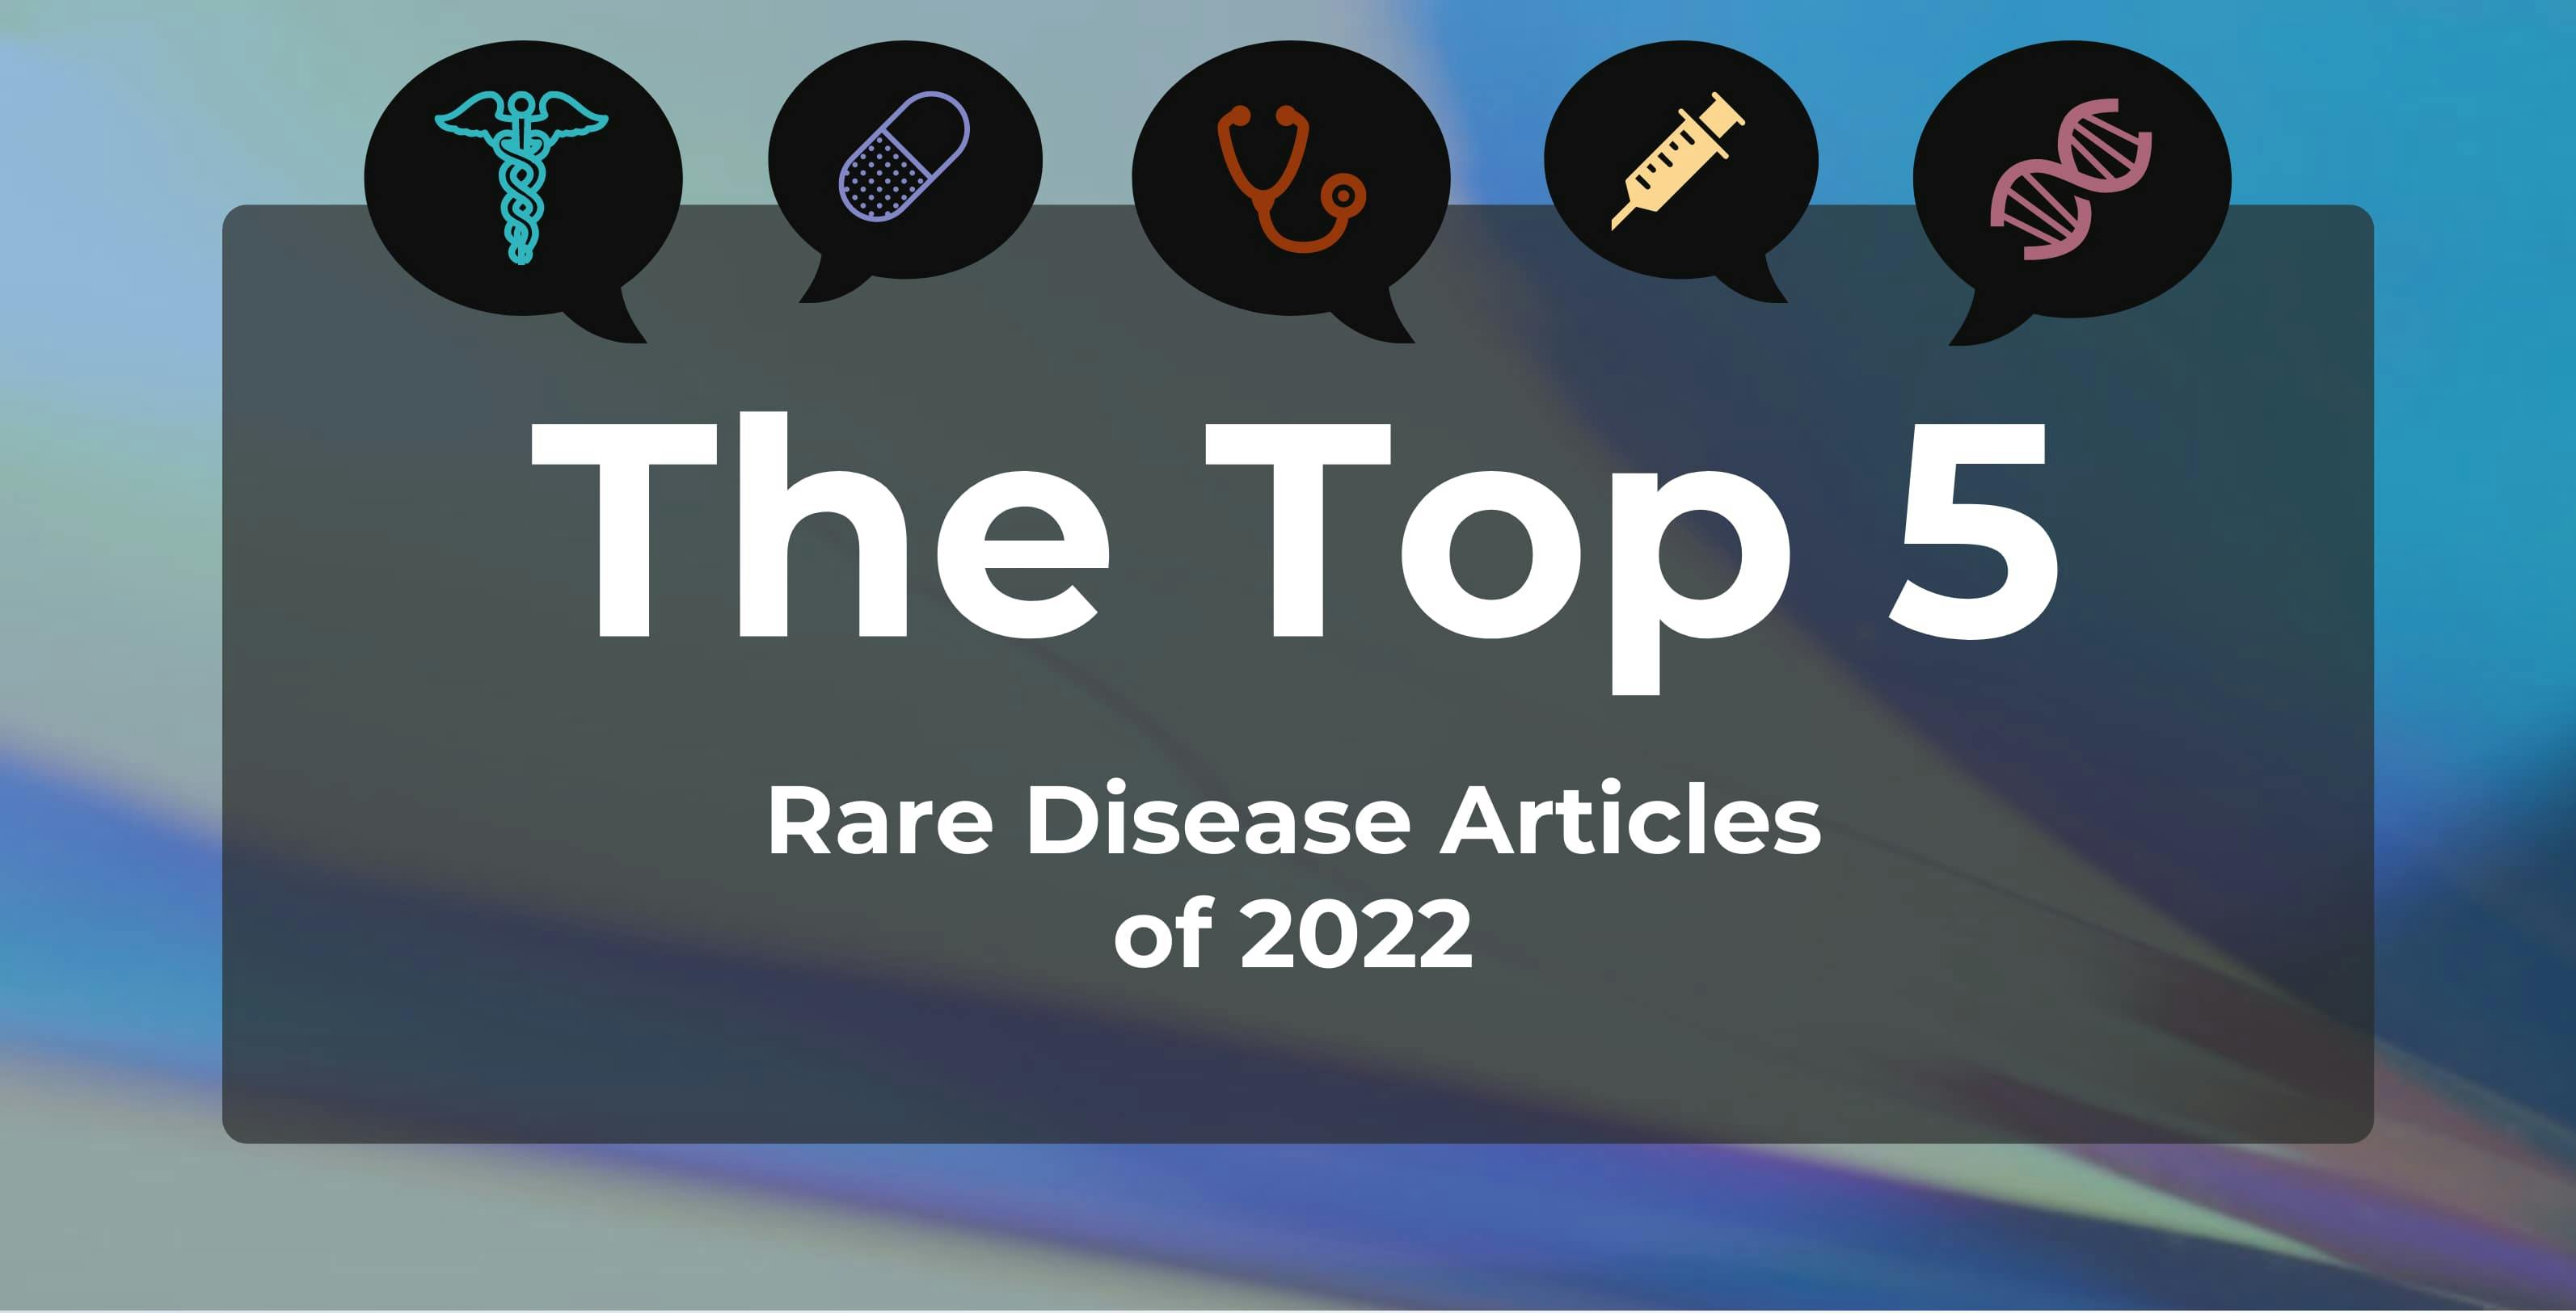 Top 5 Rare Disease Articles of 2022